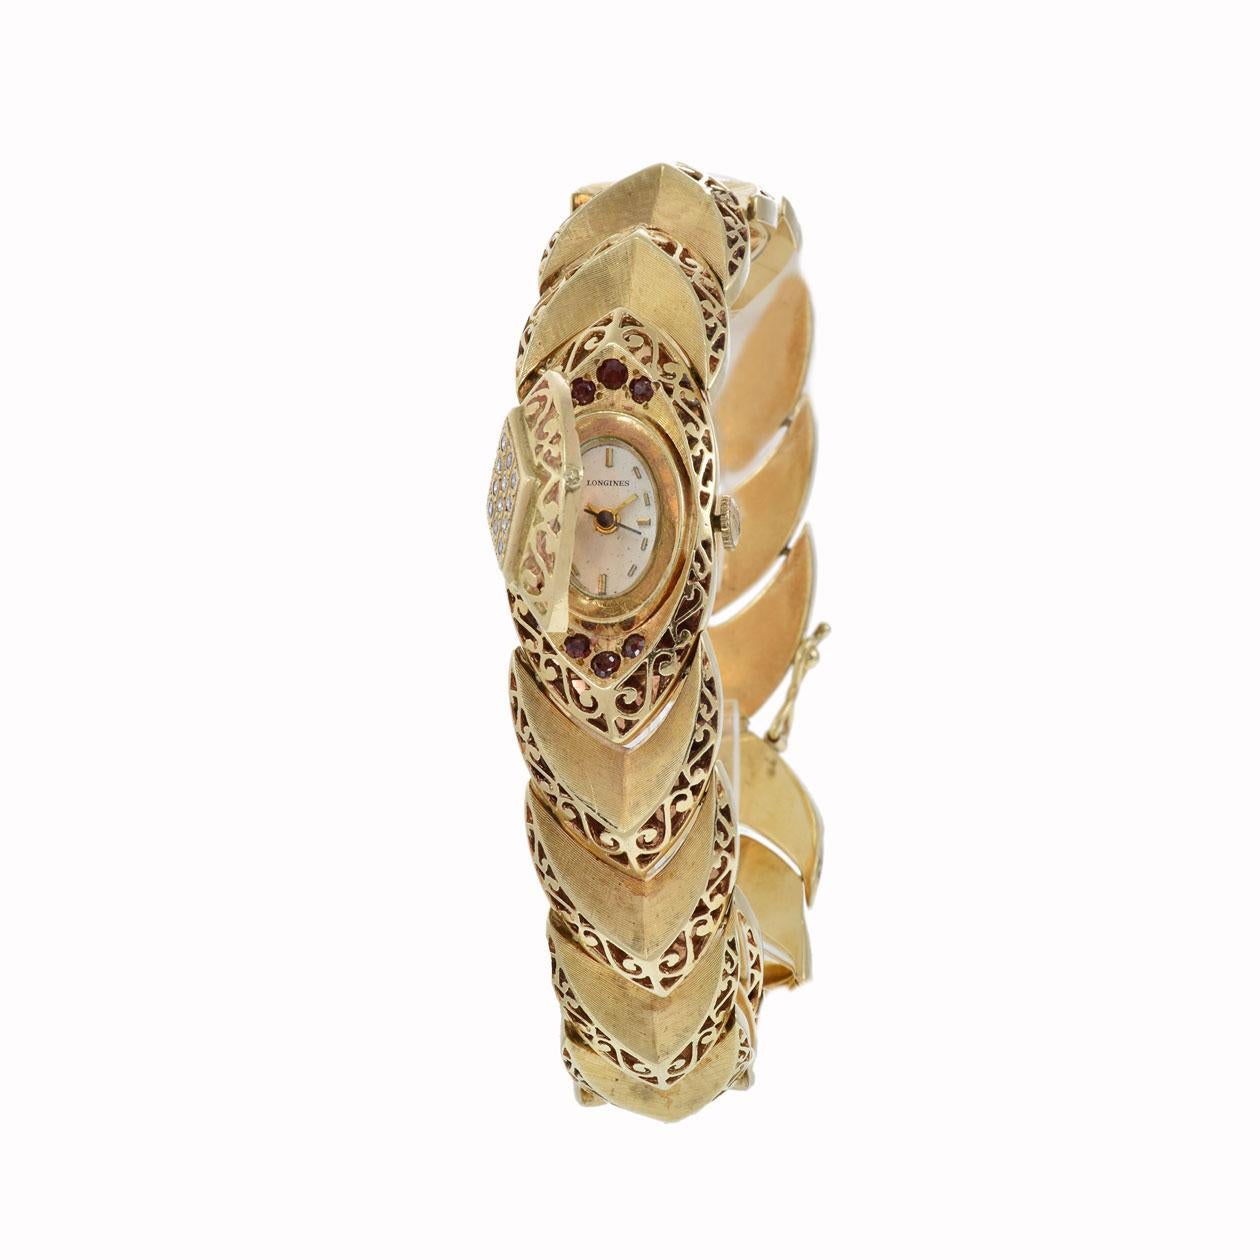 Die Longines 1960s Ladies Quartz Watch ist ein atemberaubendes Stück Vintage-Luxus und Eleganz. Dieser exquisite Zeitmesser wurde in den 1960er Jahren gefertigt und verfügt über ein zierliches 11 x 19 mm großes Gehäuse und Armband aus 14 Karat Gold,